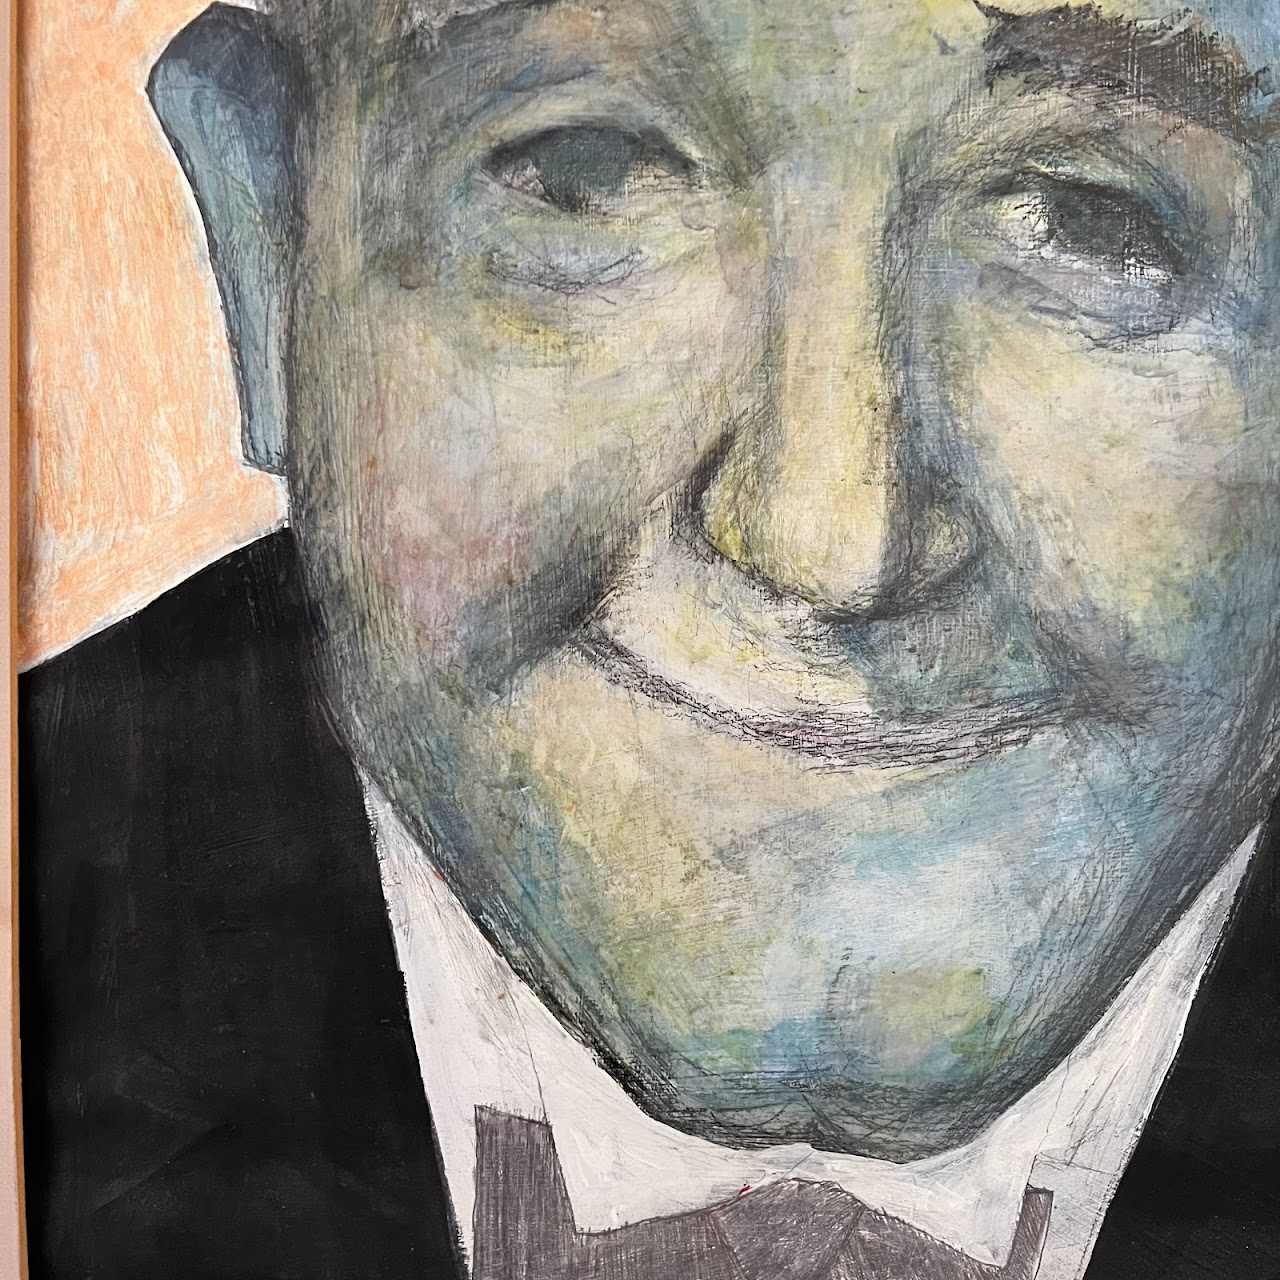 Stan  Laurel Pencil and Gouache Portrait Painting